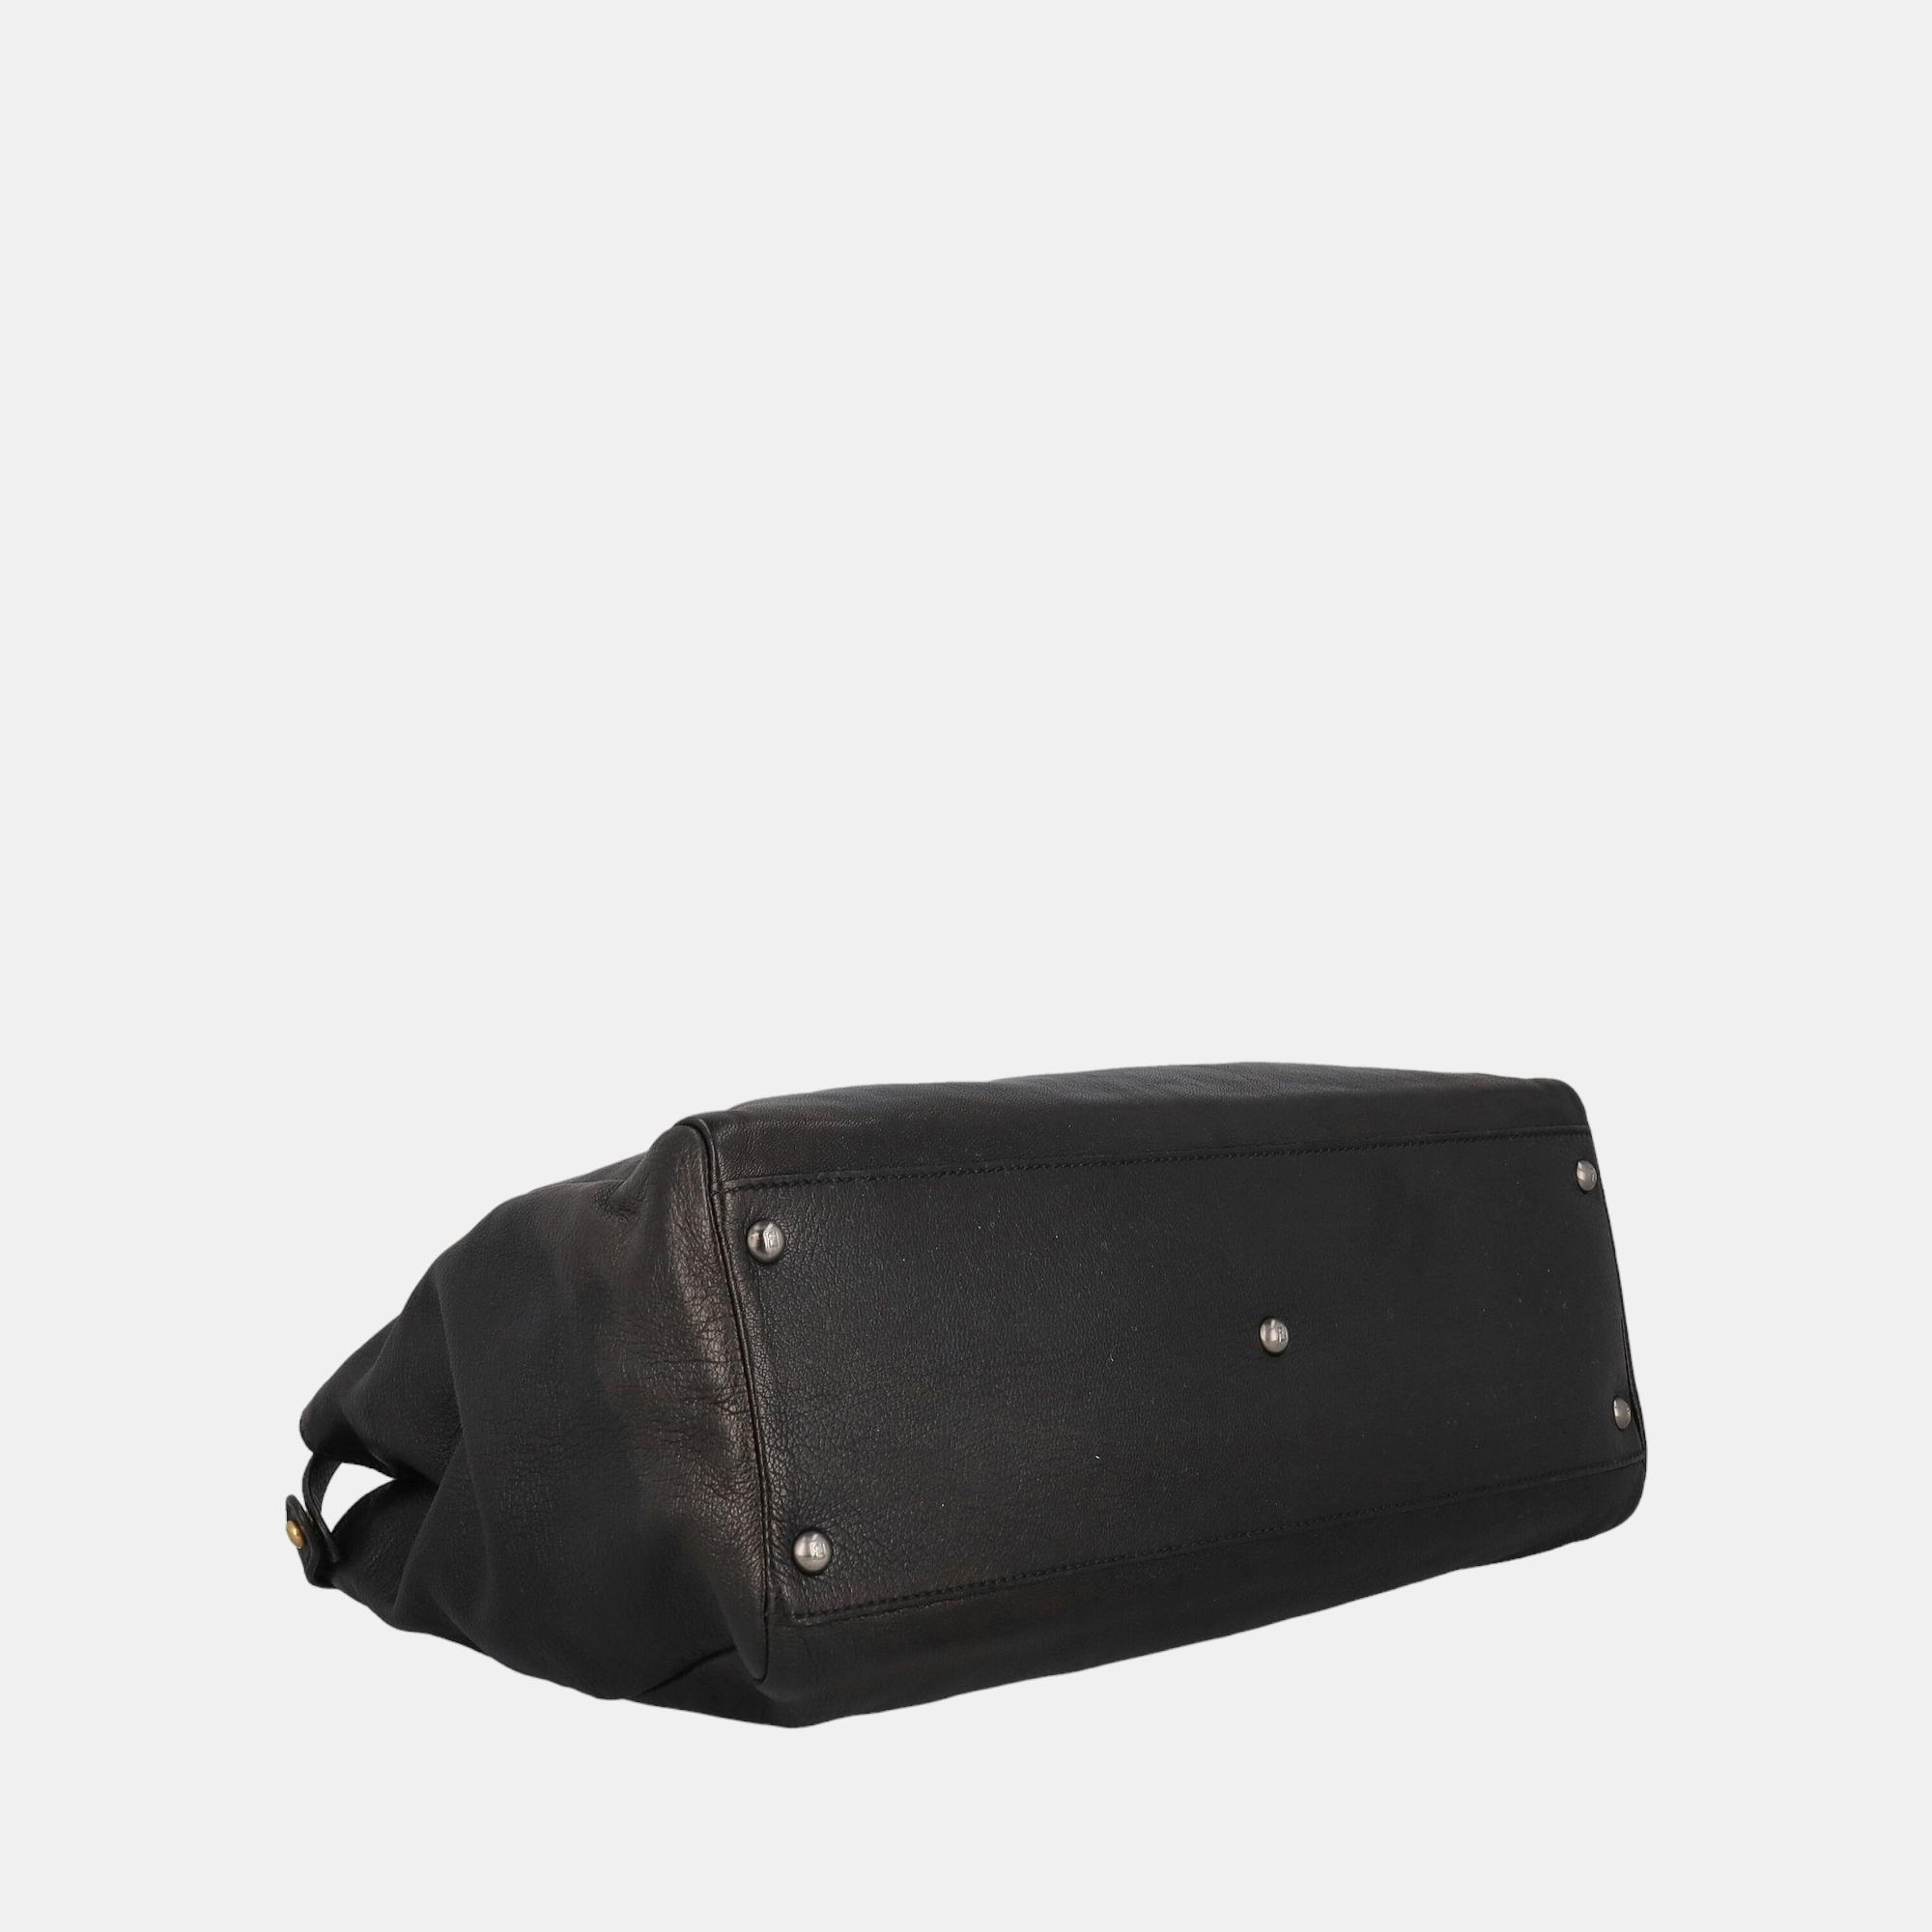 Fendi Peekaboo -  Women's Leather Tote Bag - Black - One Size